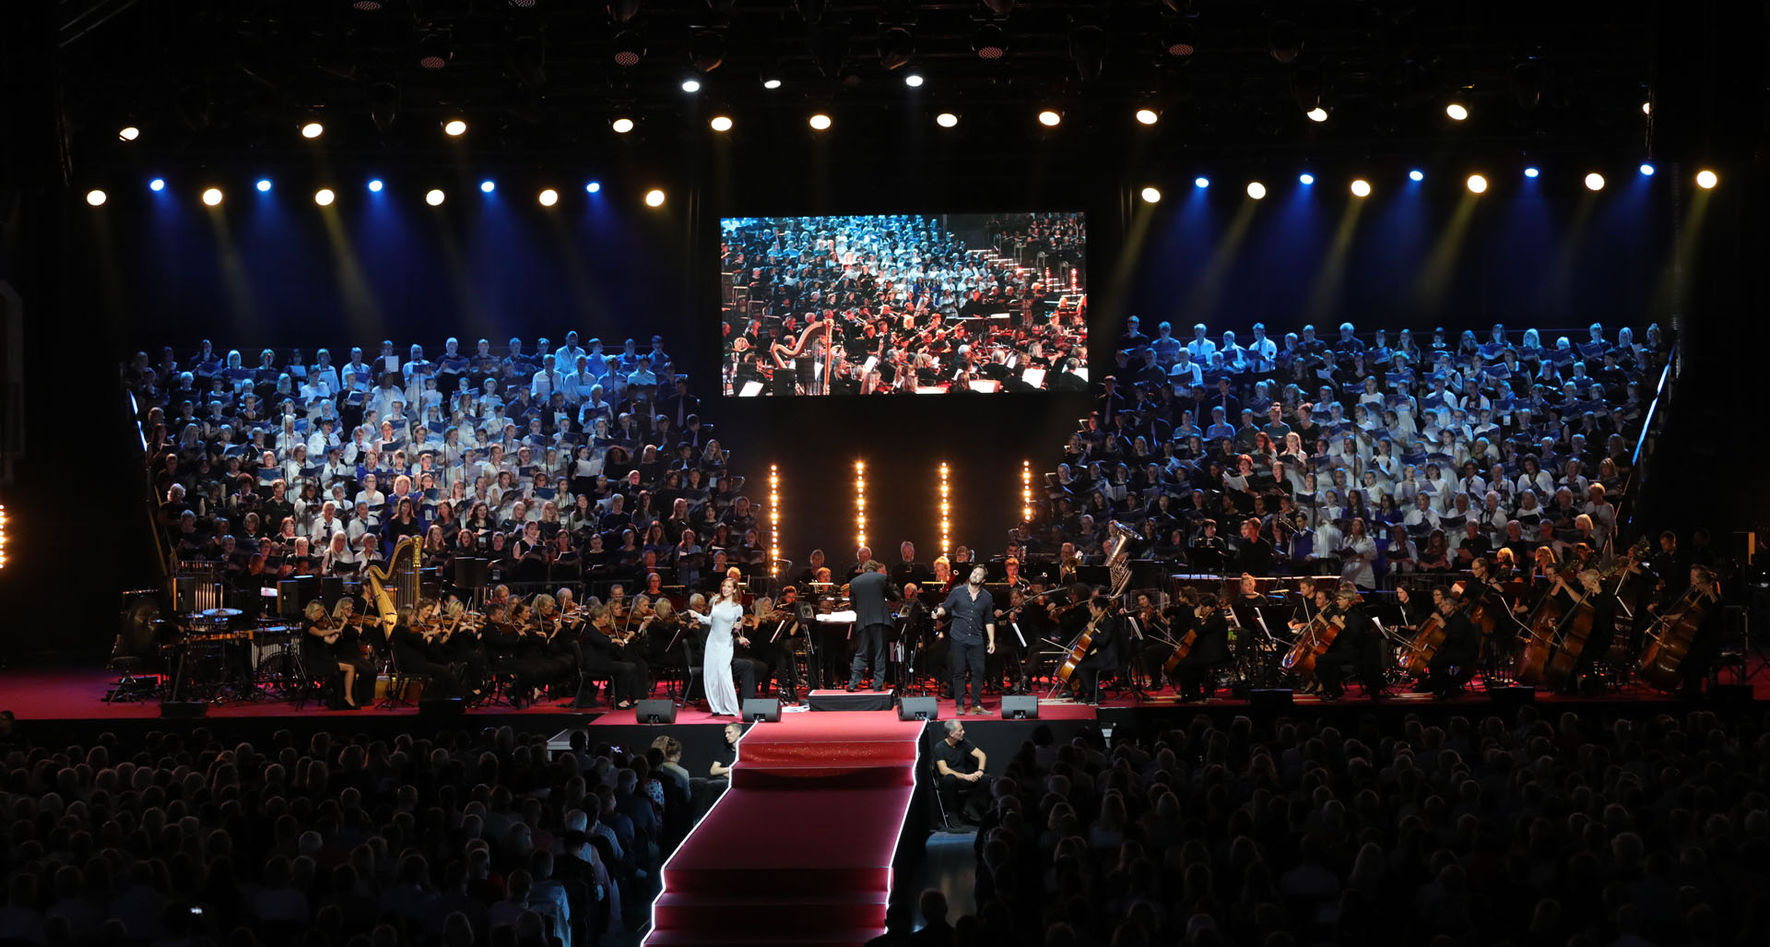 Festivalchor gemeinsam mit Orchester auf großer Bühne © Studi43